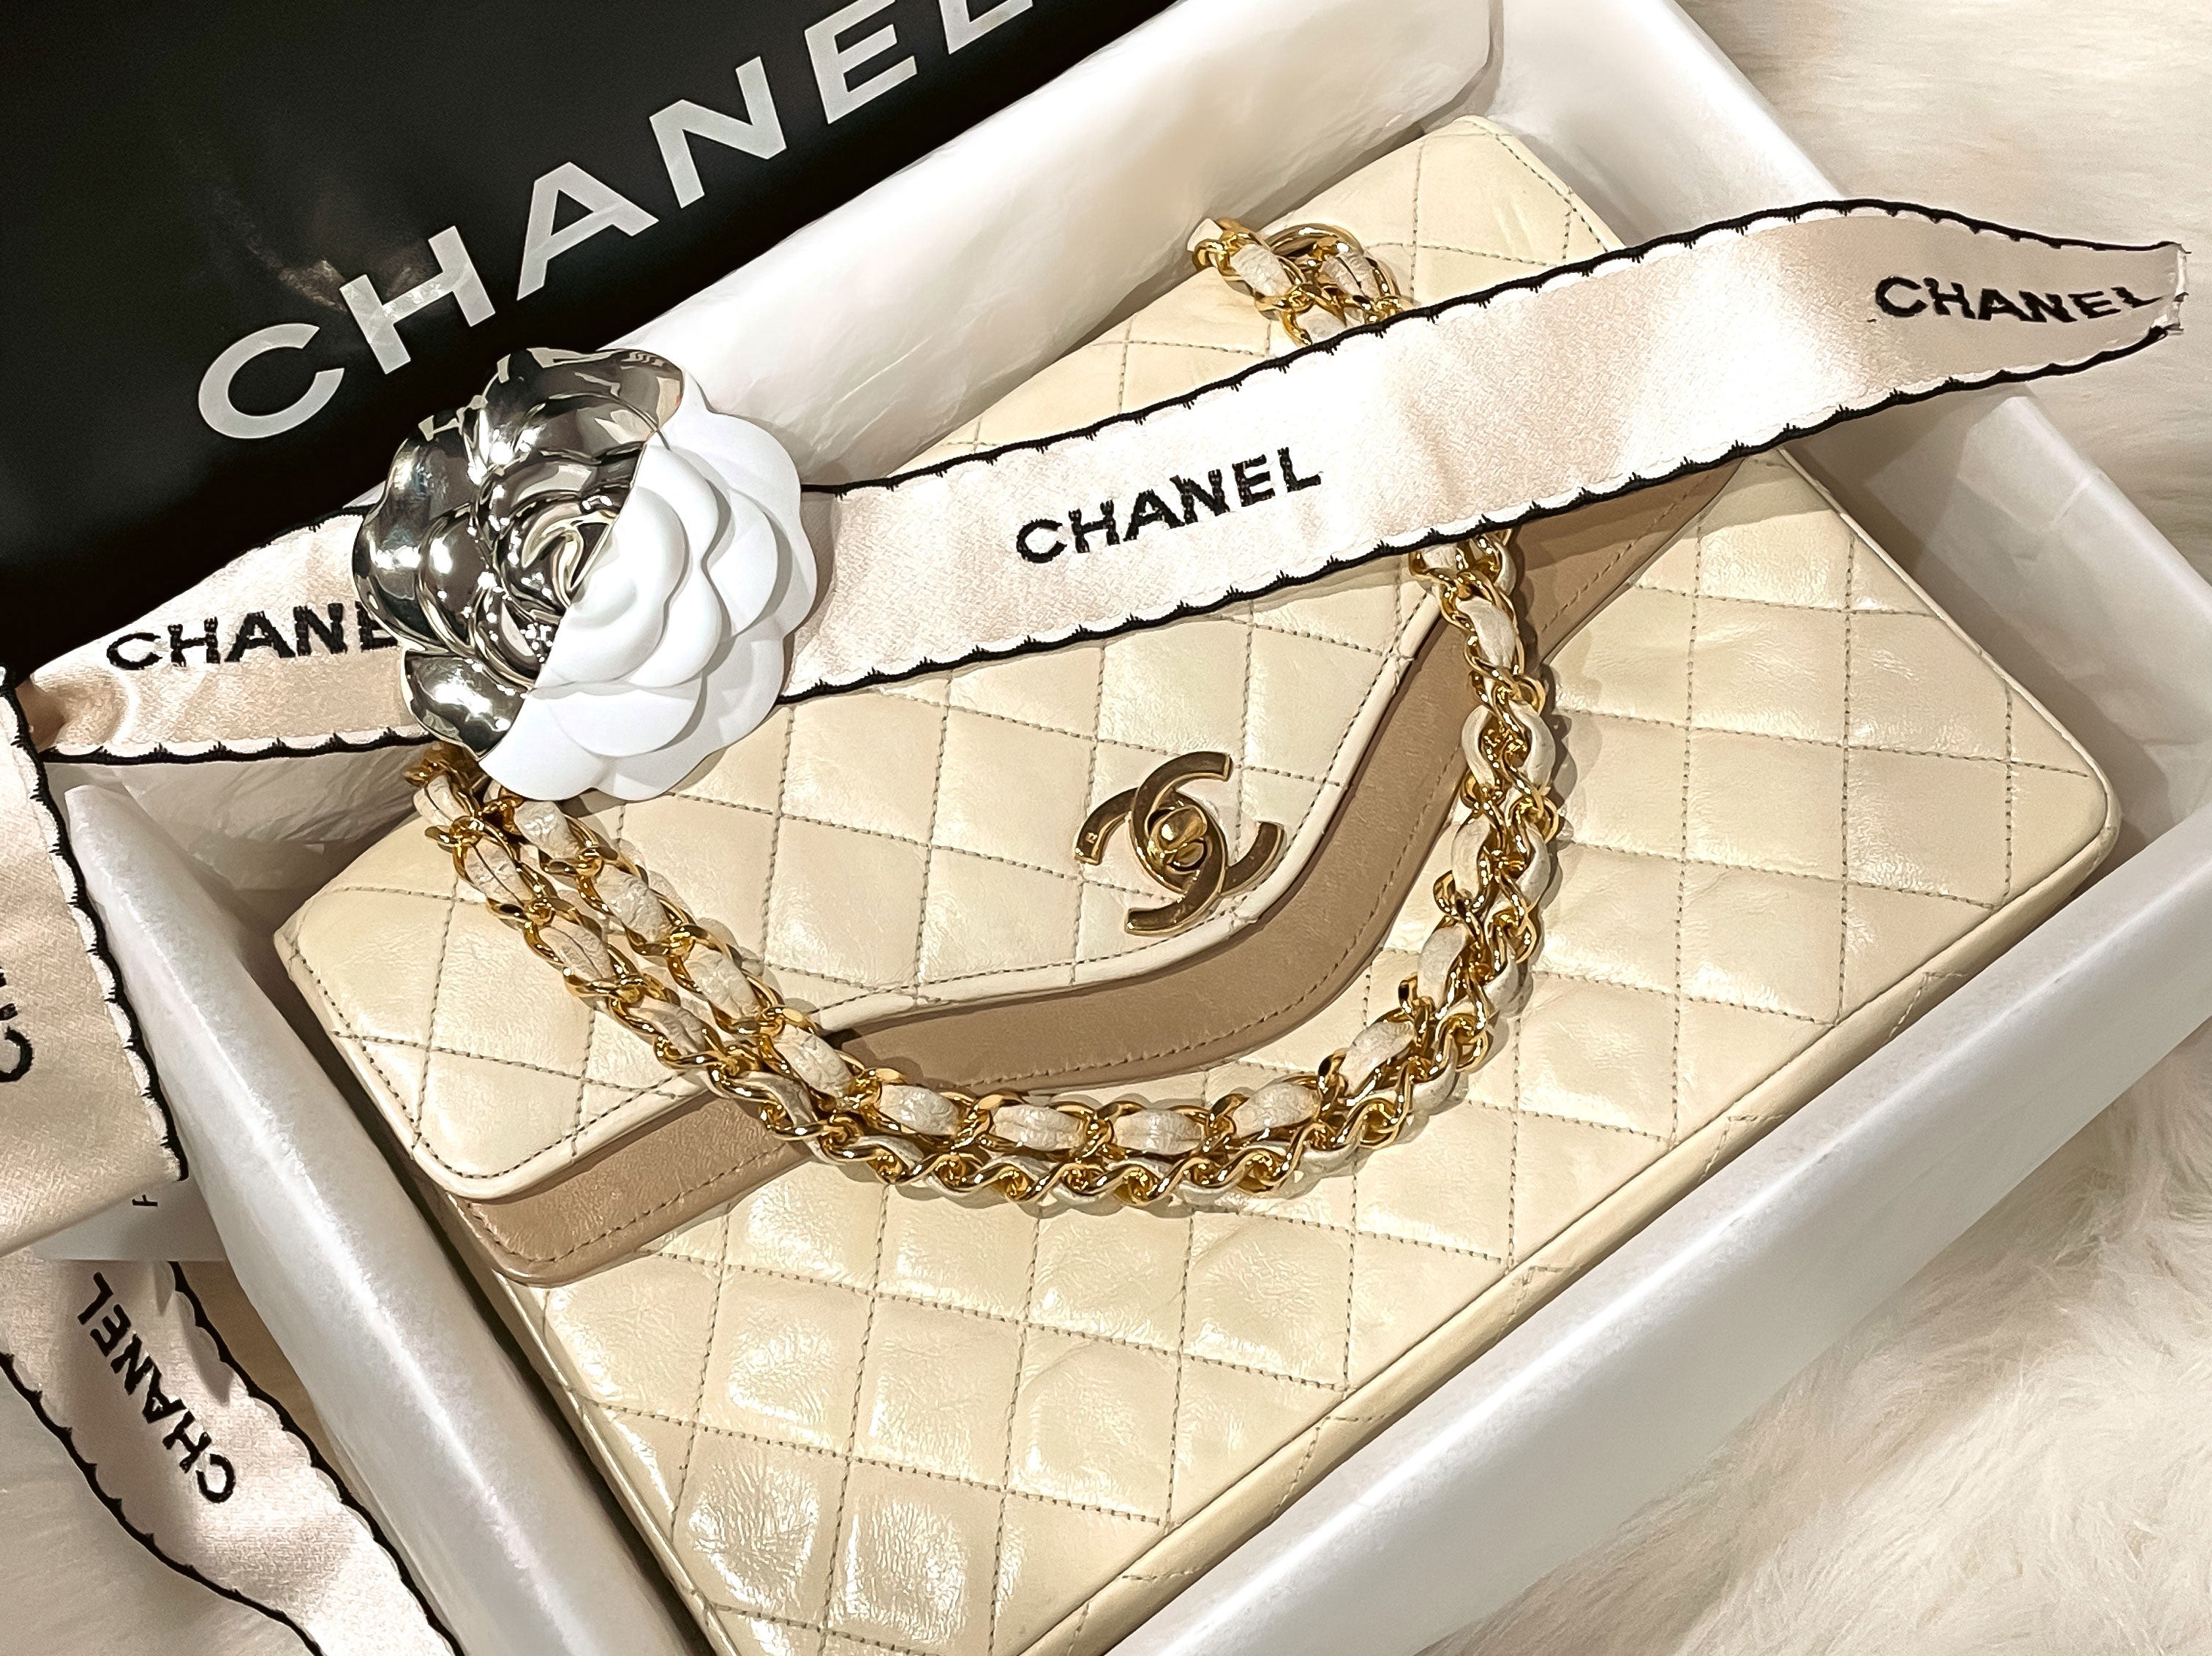 Wie unterscheidet man das Jahr des Chanel-Bags?